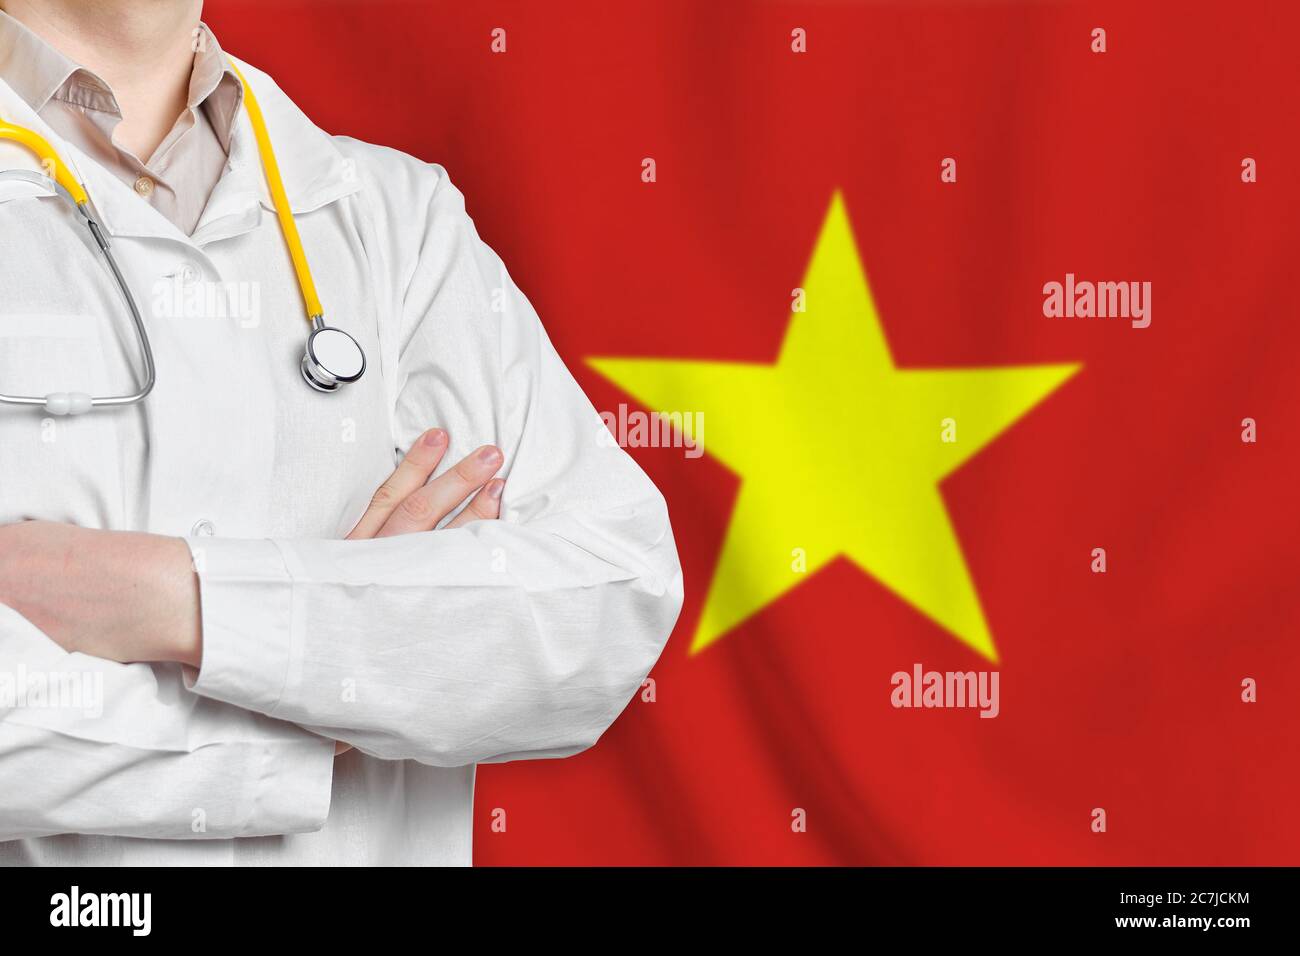 Concept de santé de la République socialiste du Vietnam avec médecin sur fond de drapeau. Assurance médicale, travail ou études dans le pays Banque D'Images